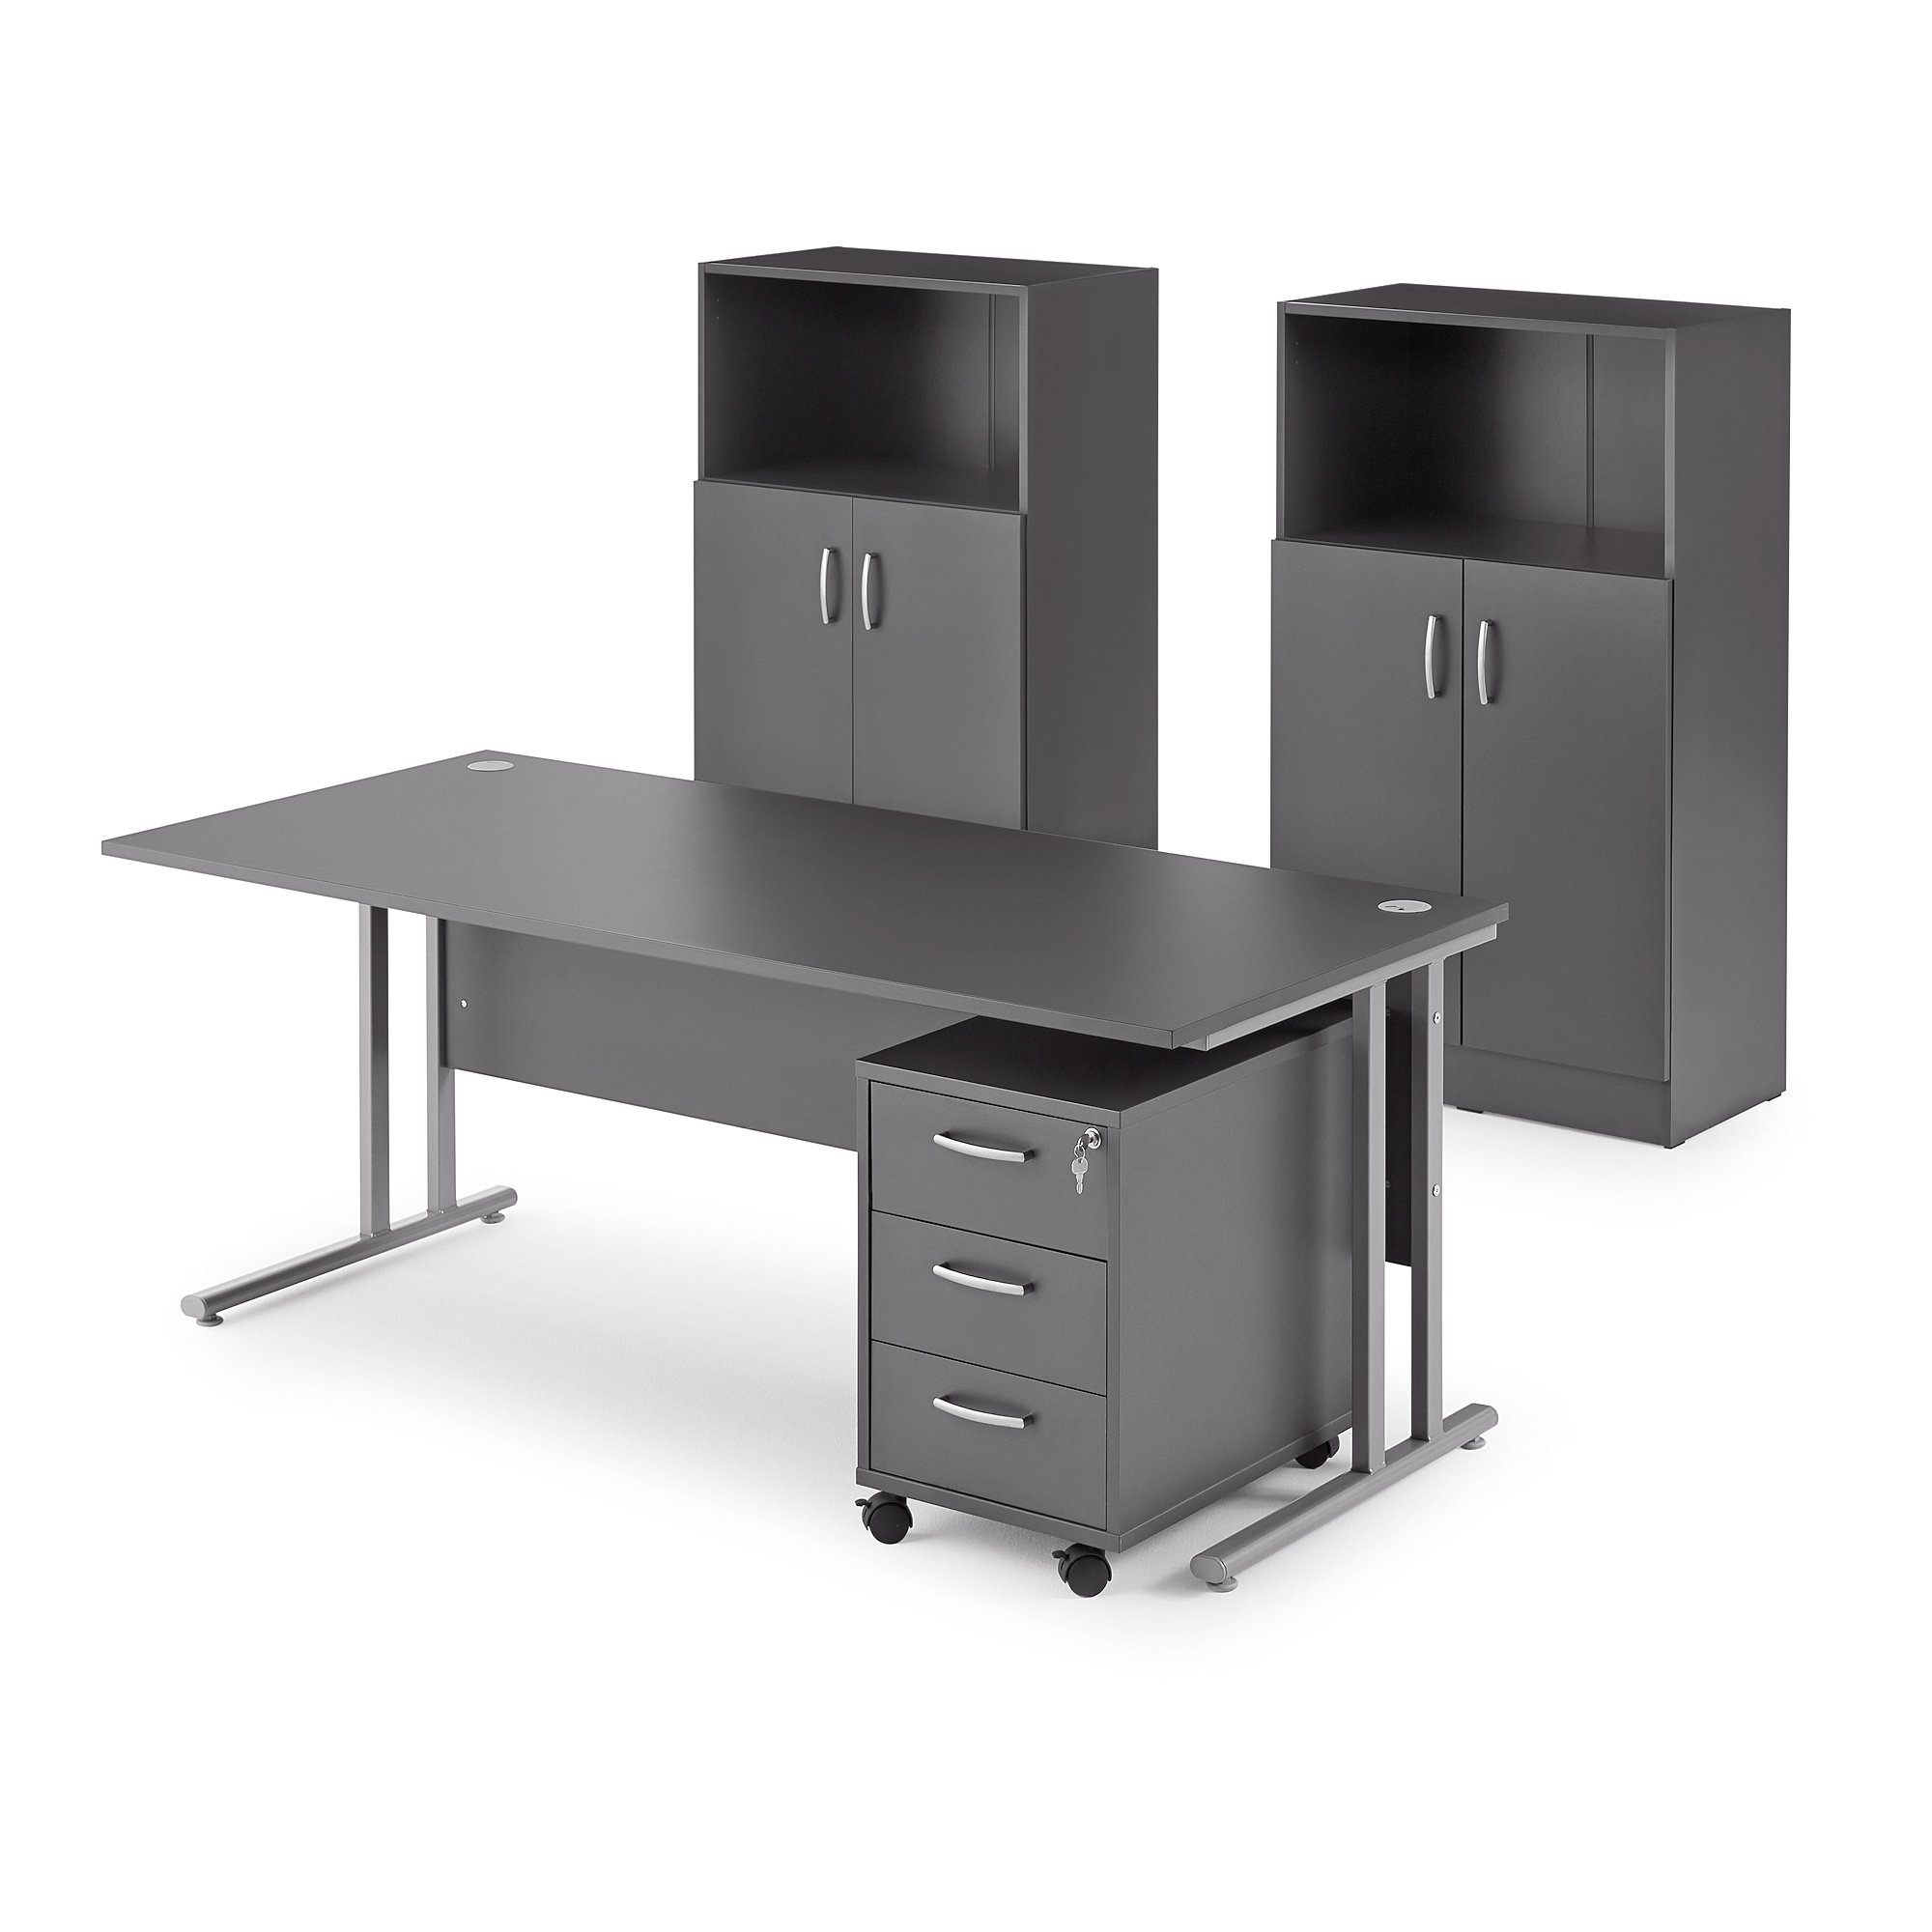 E-shop Kancelárska zostava Flexus: stôl + kancelársky kontajner + 2 skrinky